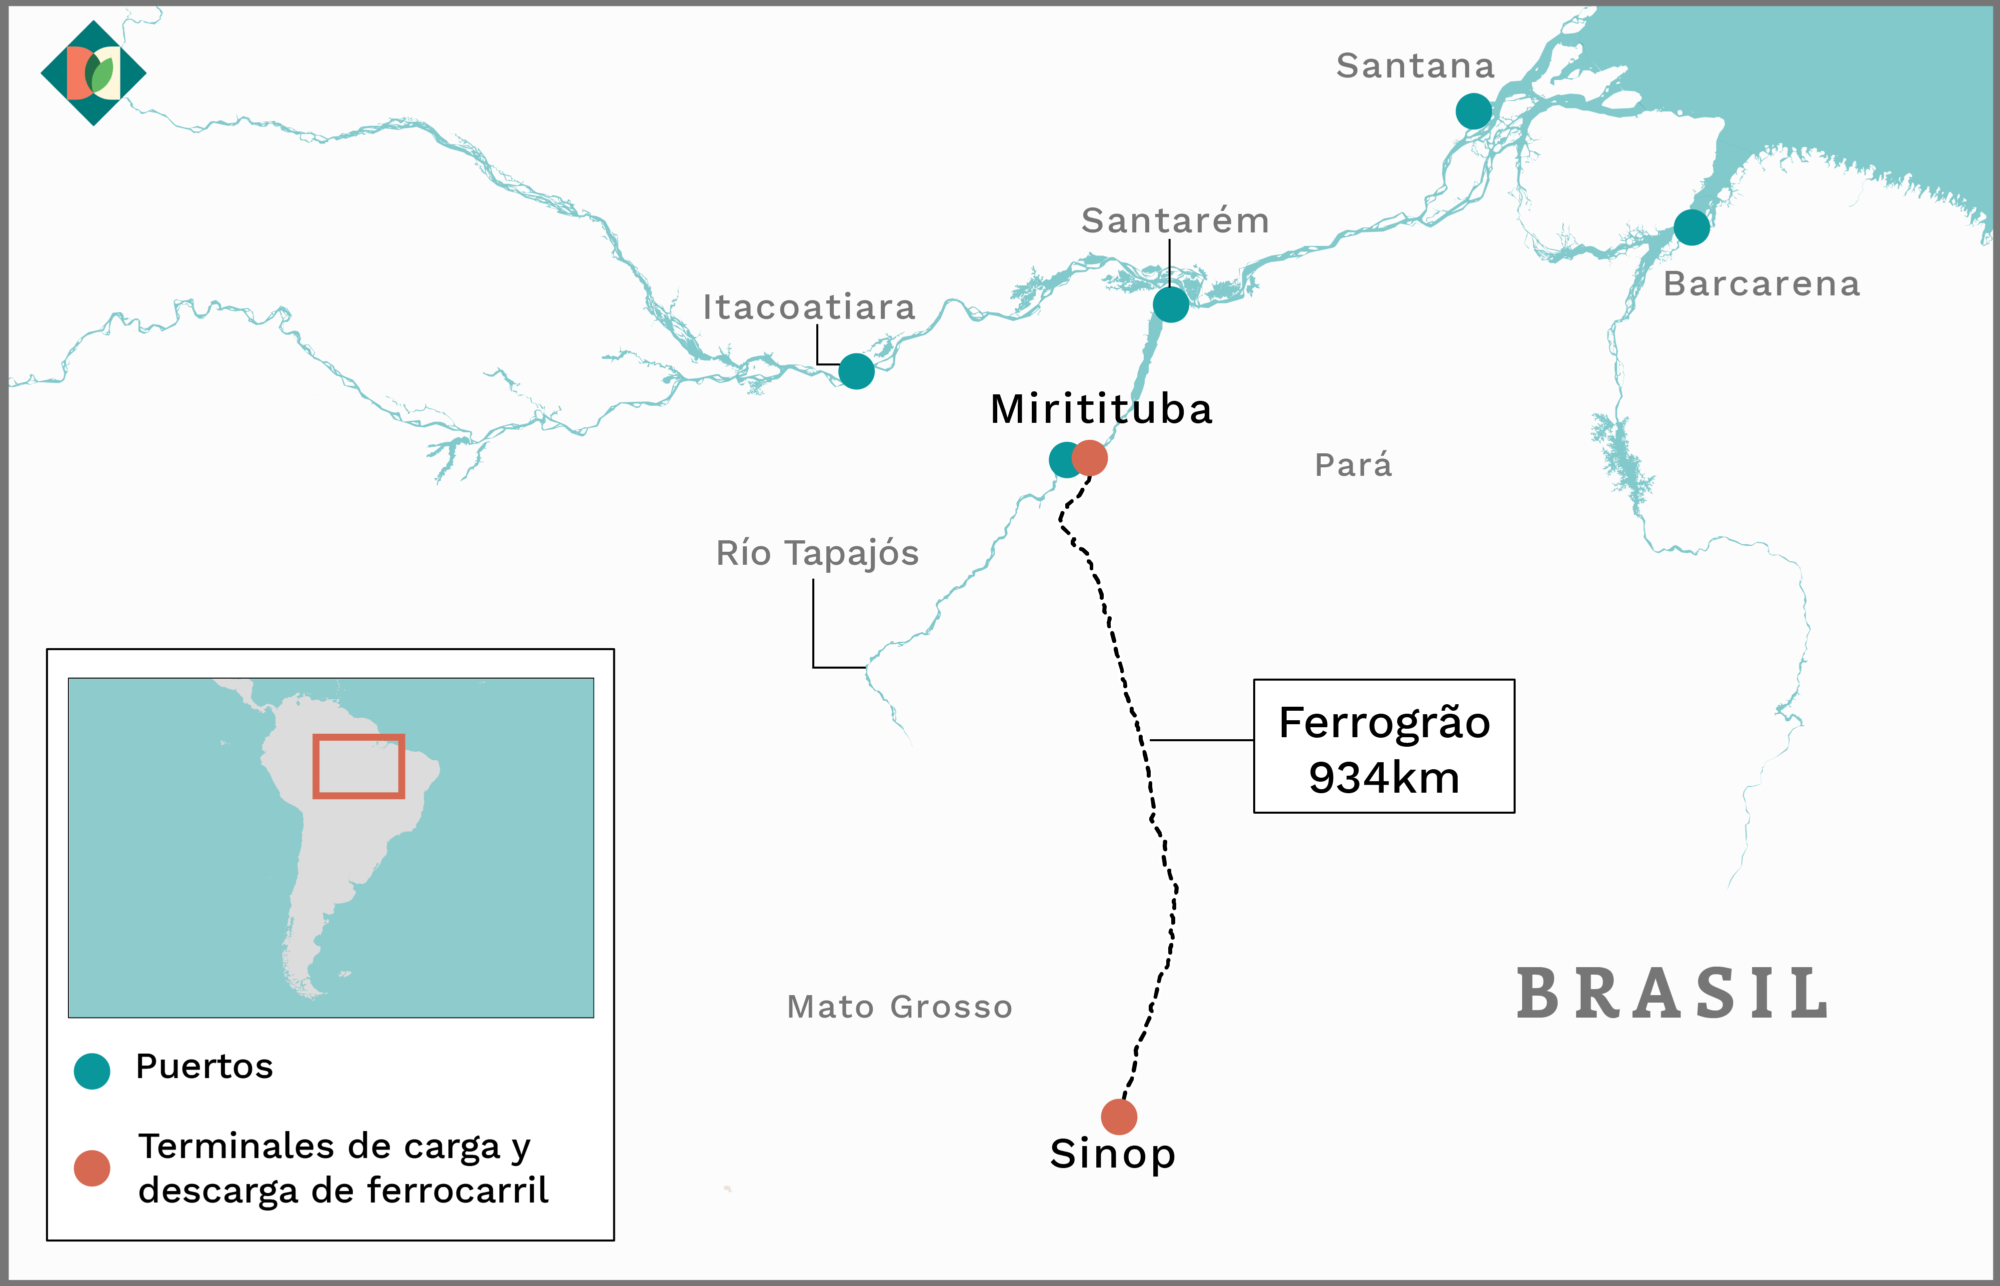 Mapa que muestra el recorrido del Ferrogrão